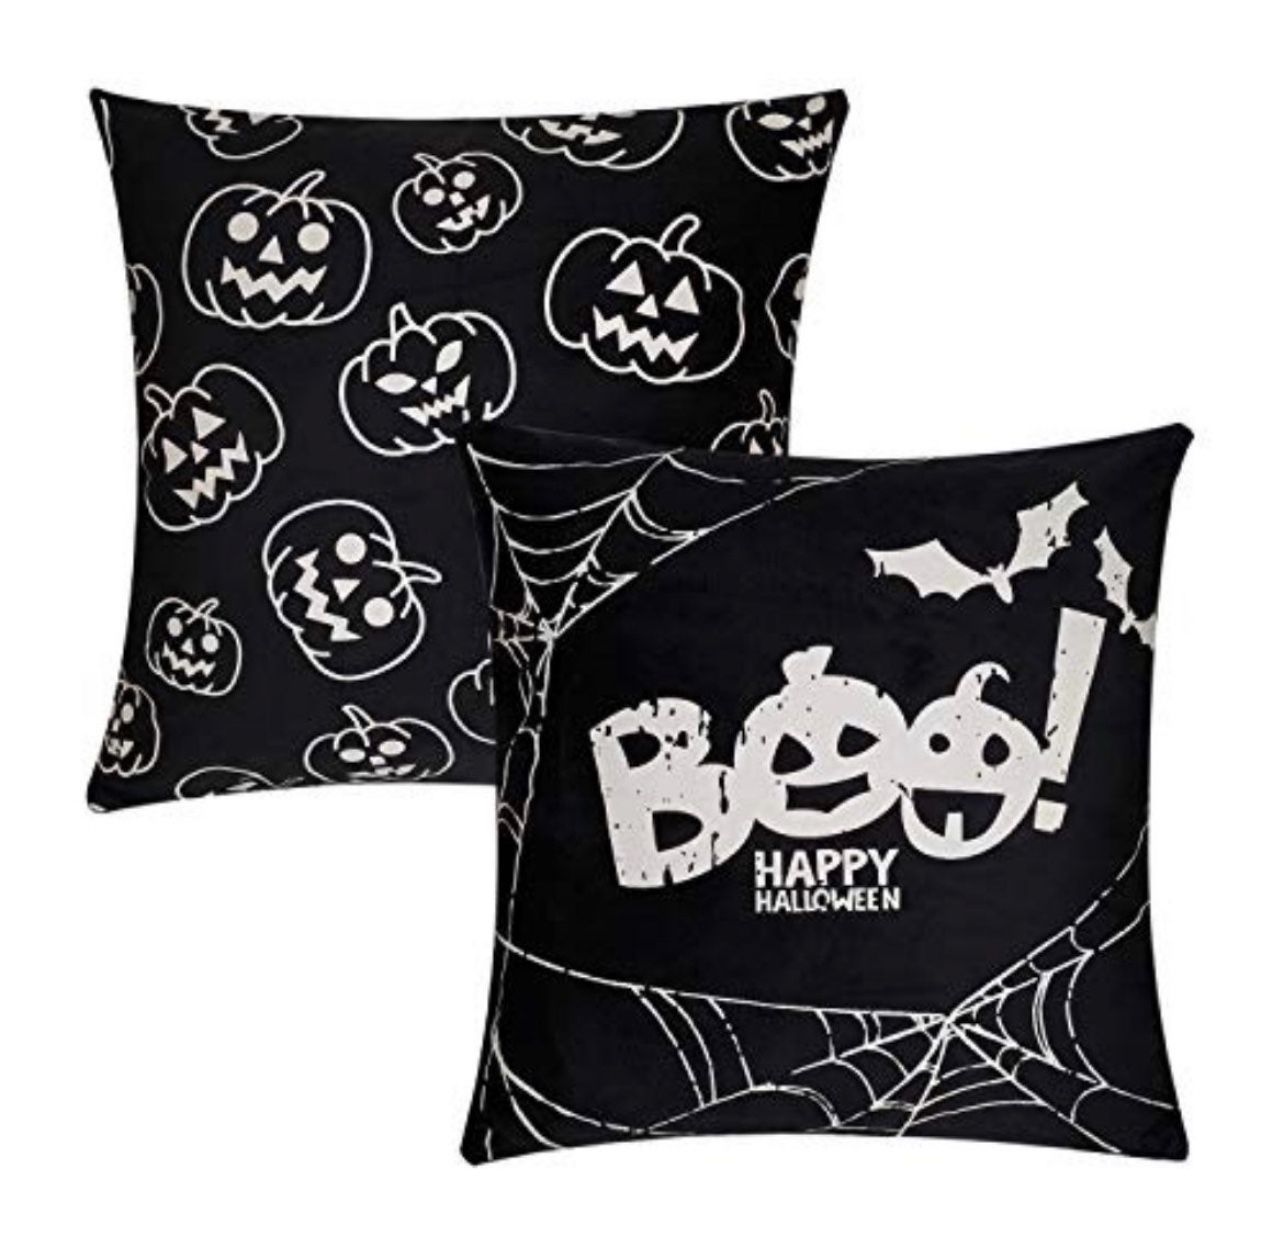 Glow in Dark 2 Halloween pillow covers